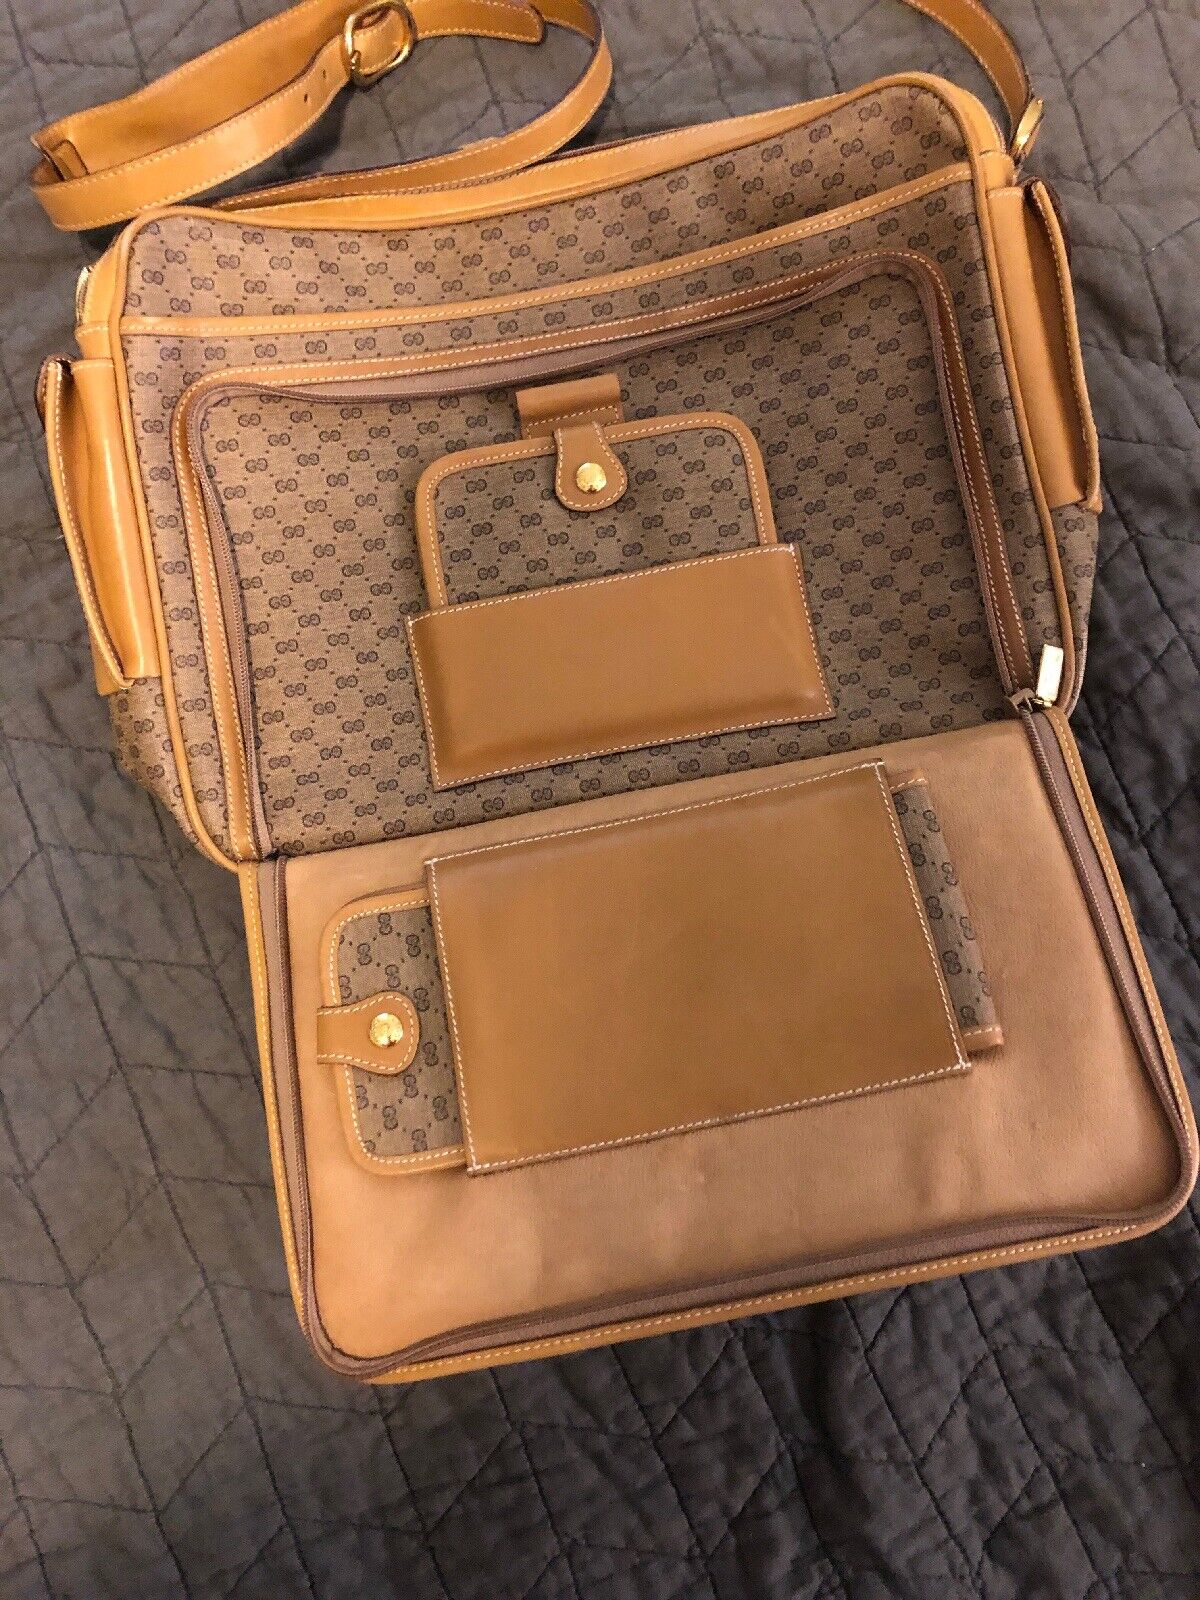 Редкий Gucci винтаж 70-х годов почтальонская сумка с Митсубиши | eBay